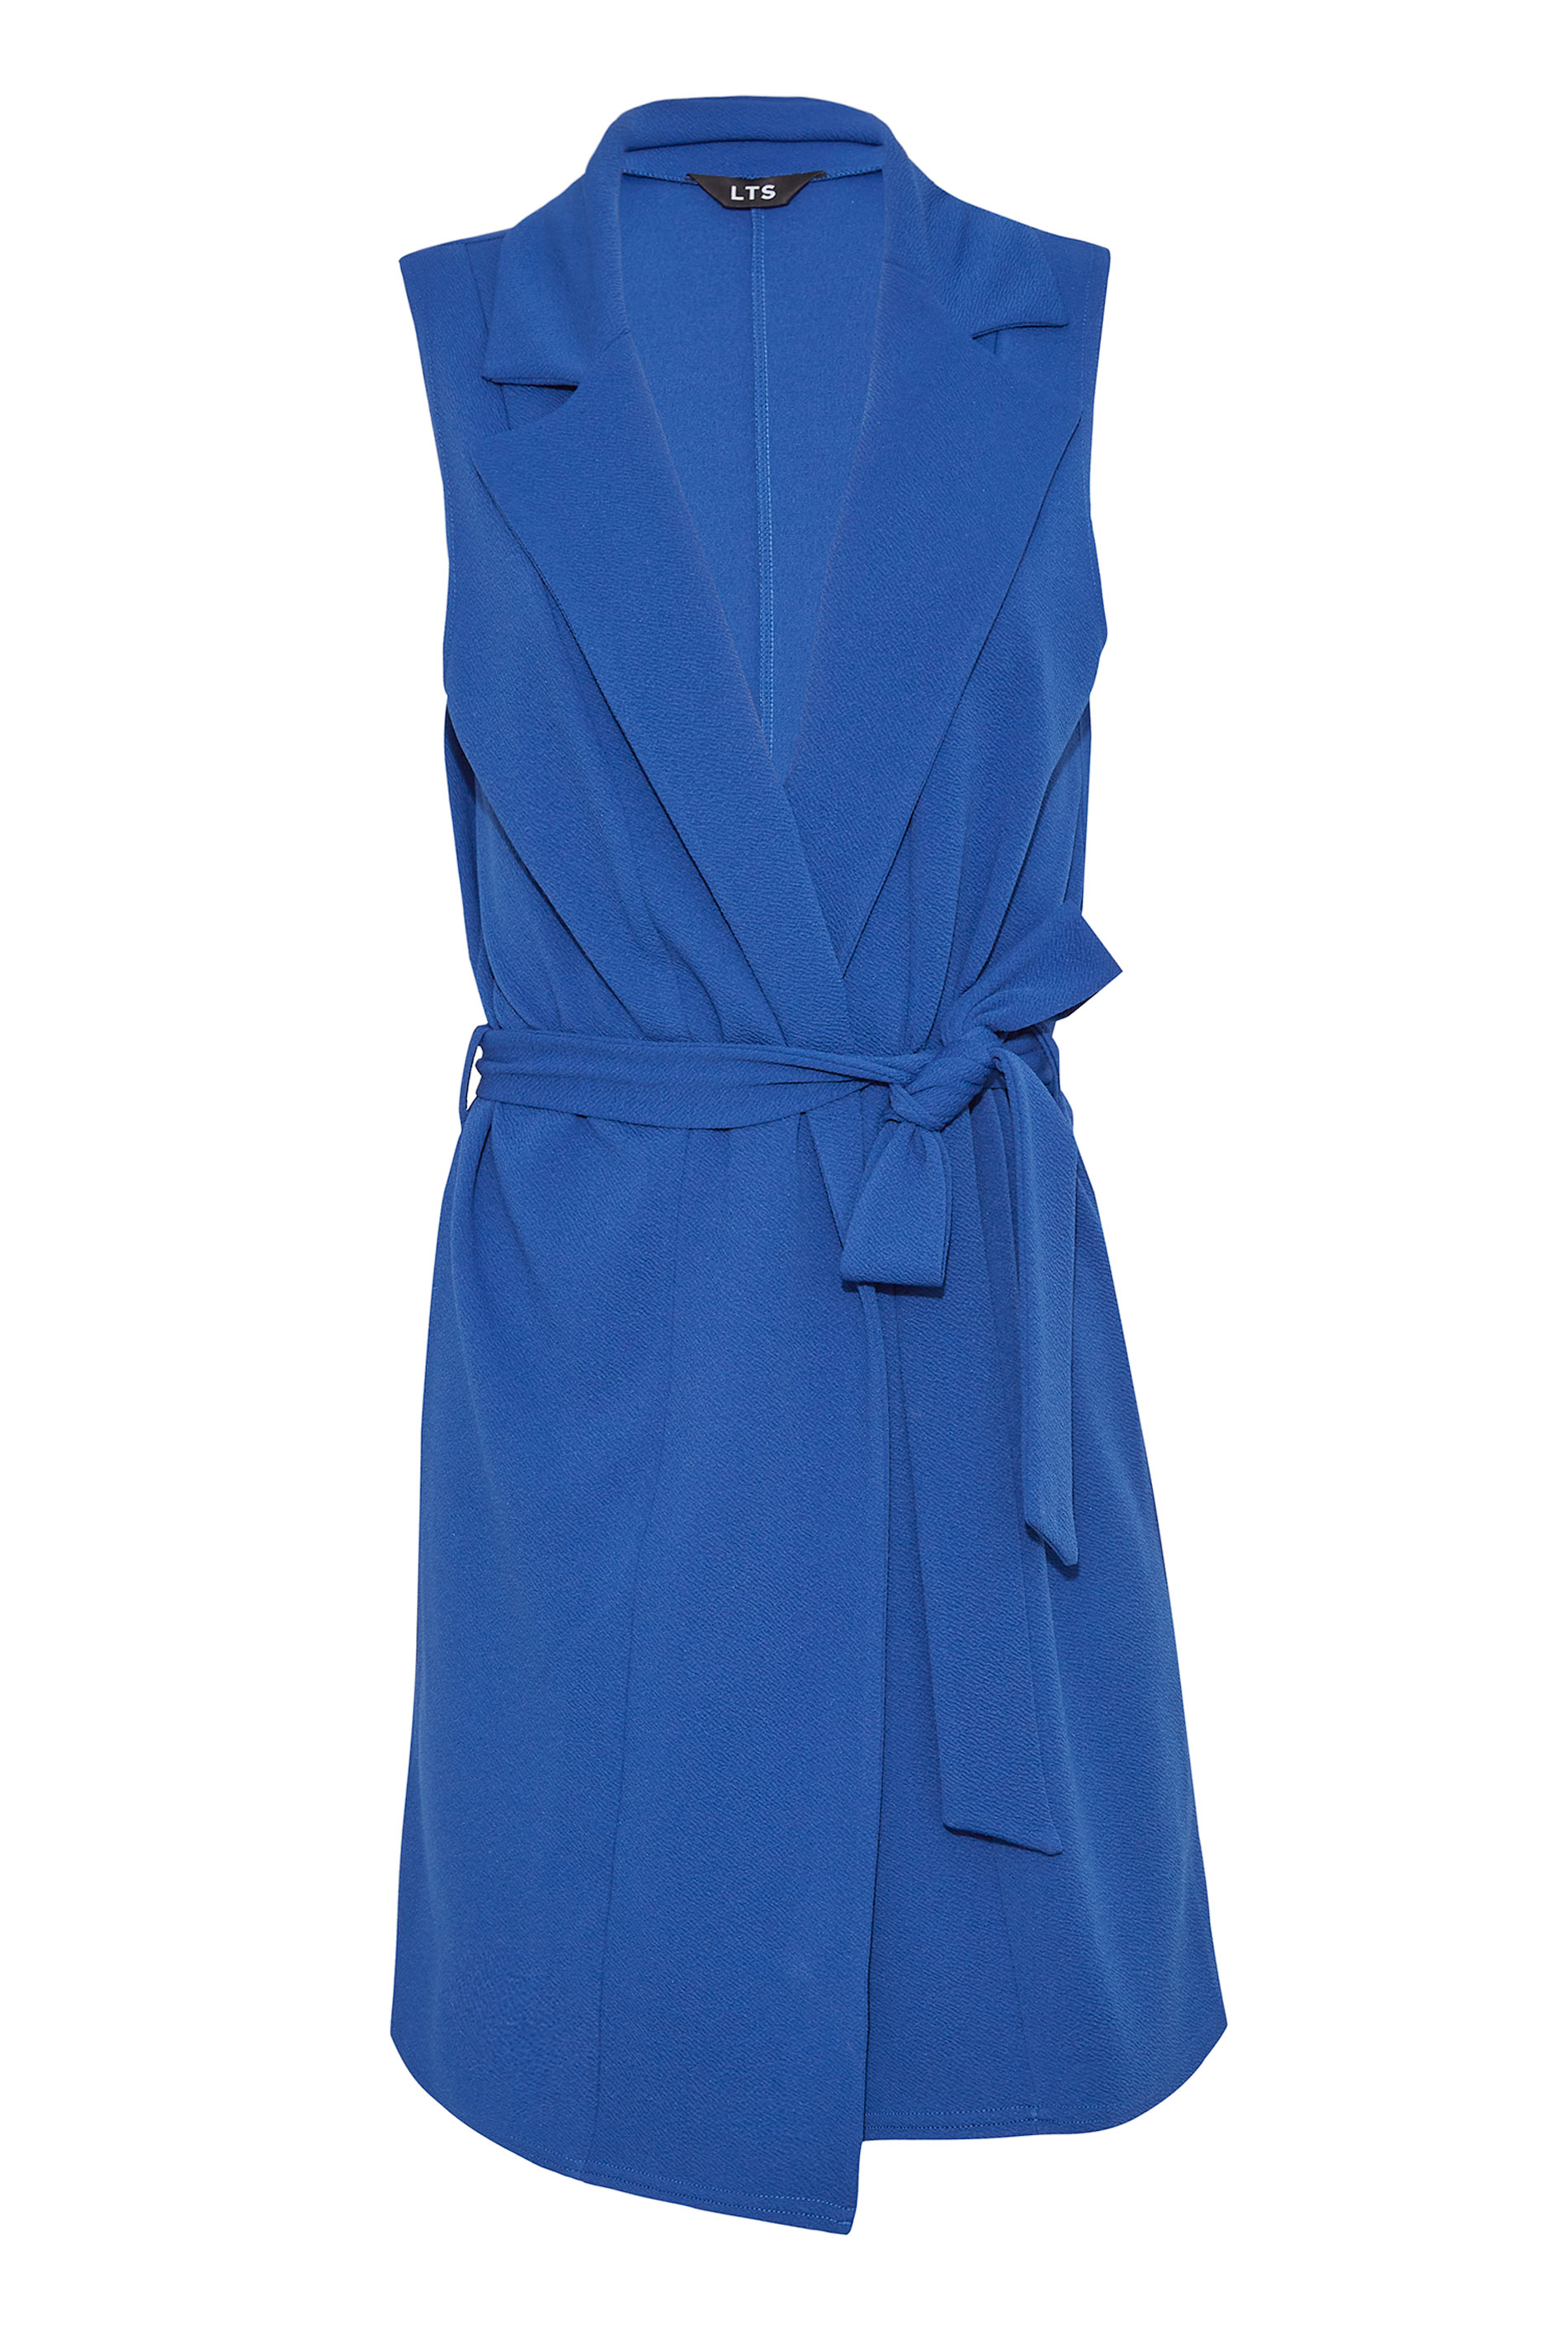 LTS Tall Women's Cobalt Blue Sleeveless Scuba Blazer | Long Tall Sally